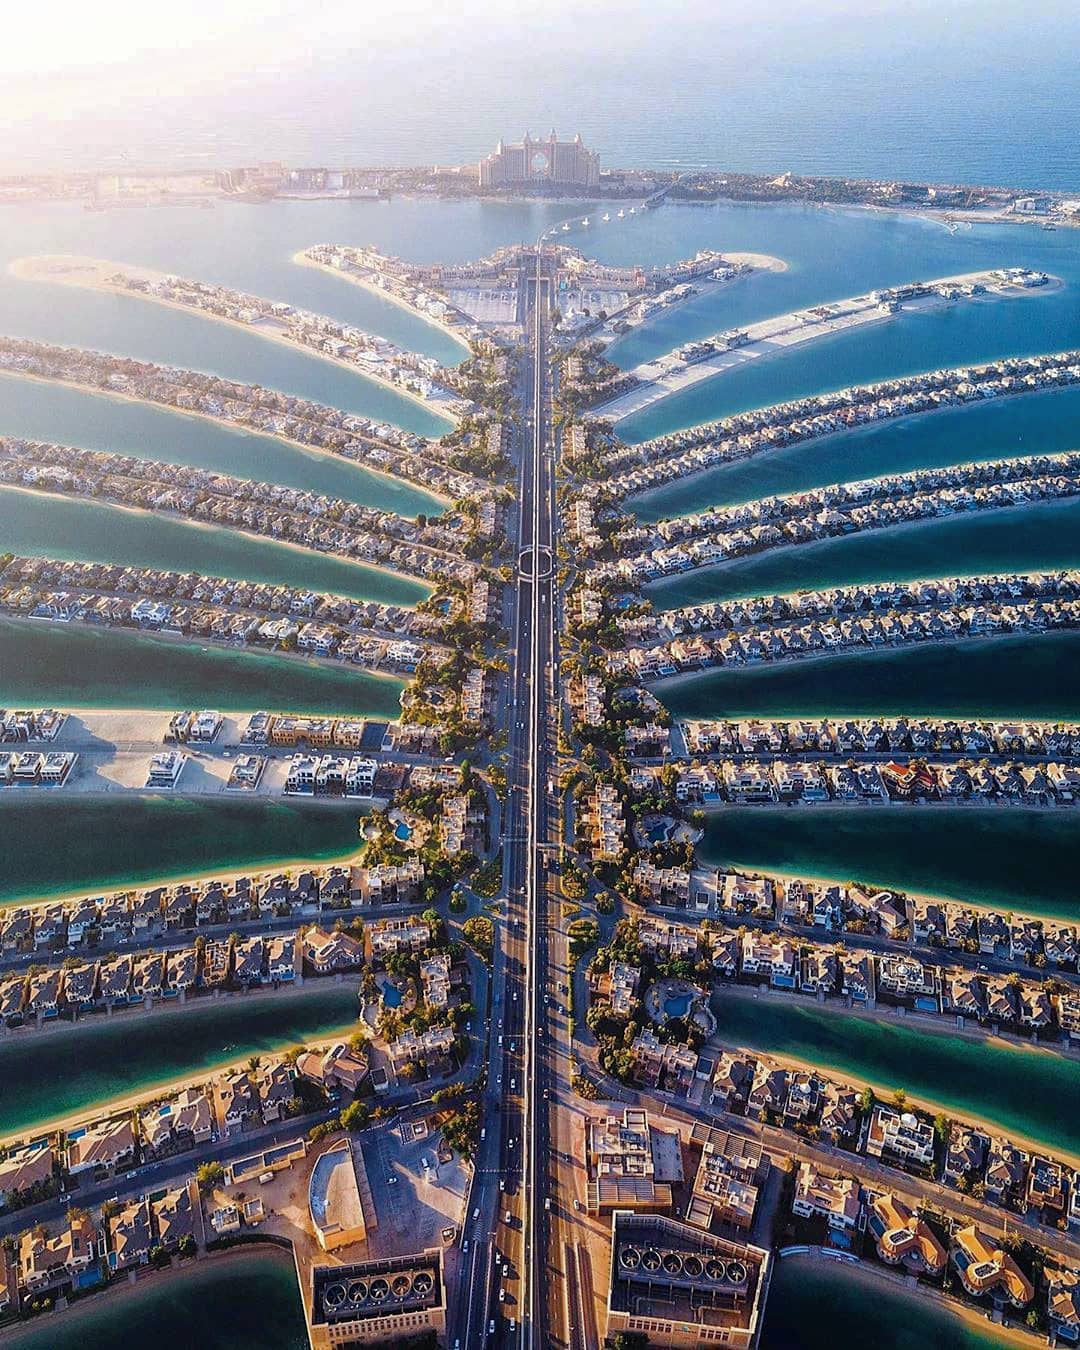 Dubai do céu